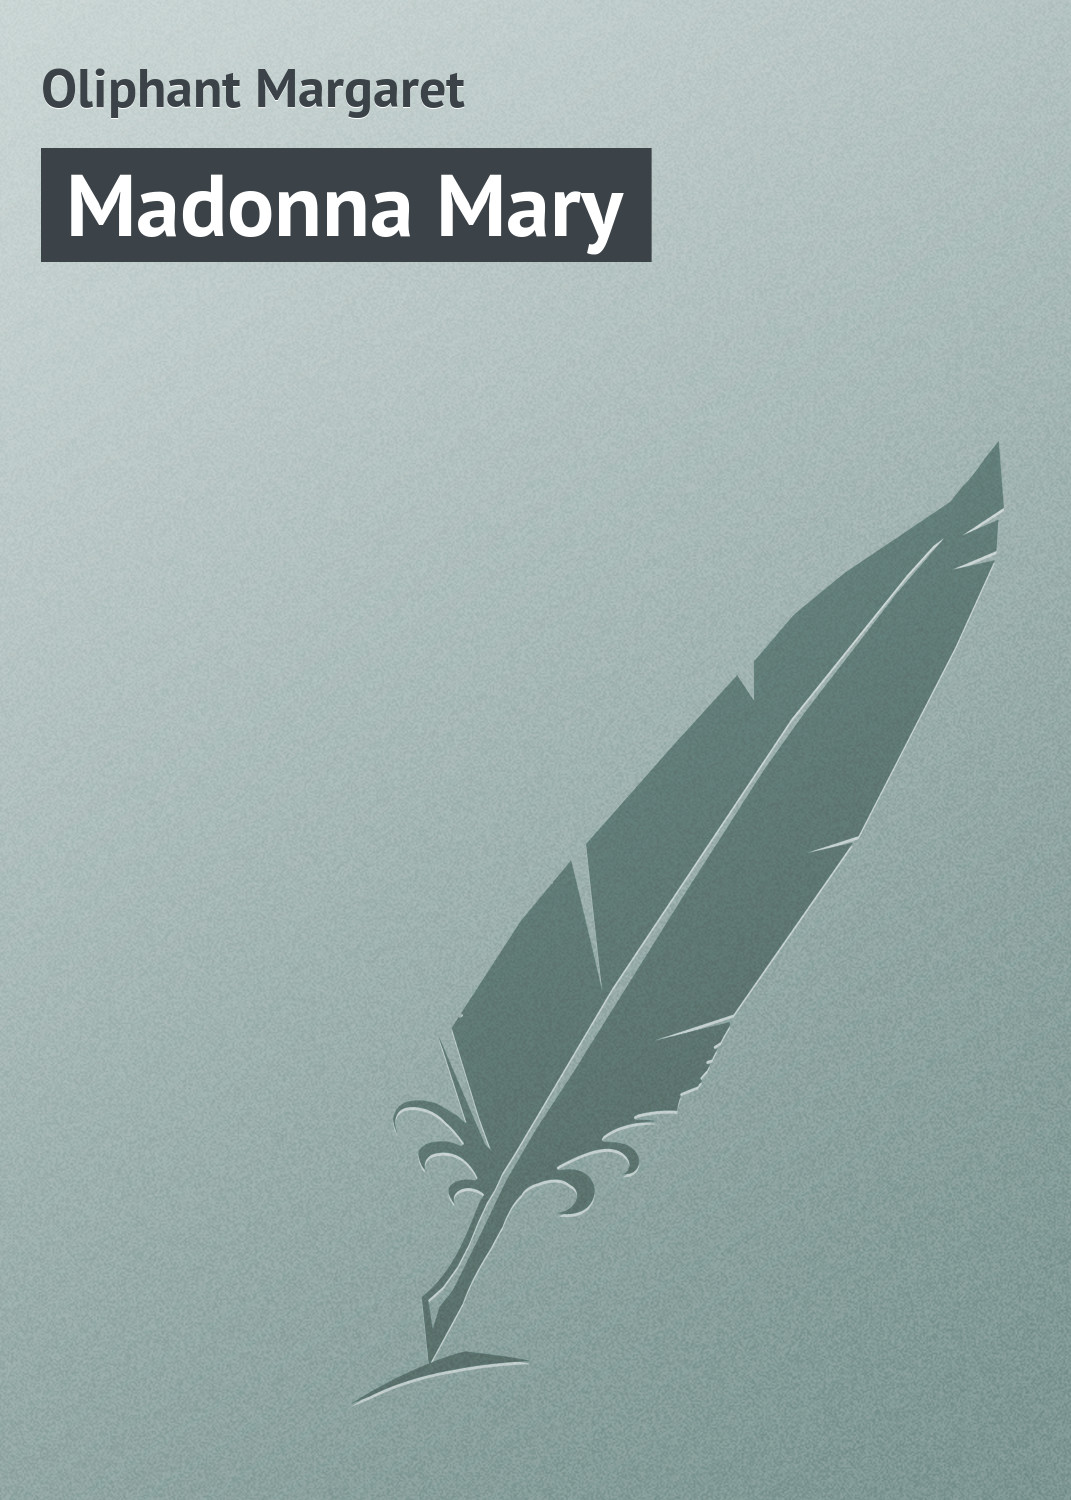 Книга Madonna Mary из серии , созданная Margaret Oliphant, может относится к жанру Зарубежная классика. Стоимость электронной книги Madonna Mary с идентификатором 23159859 составляет 5.99 руб.